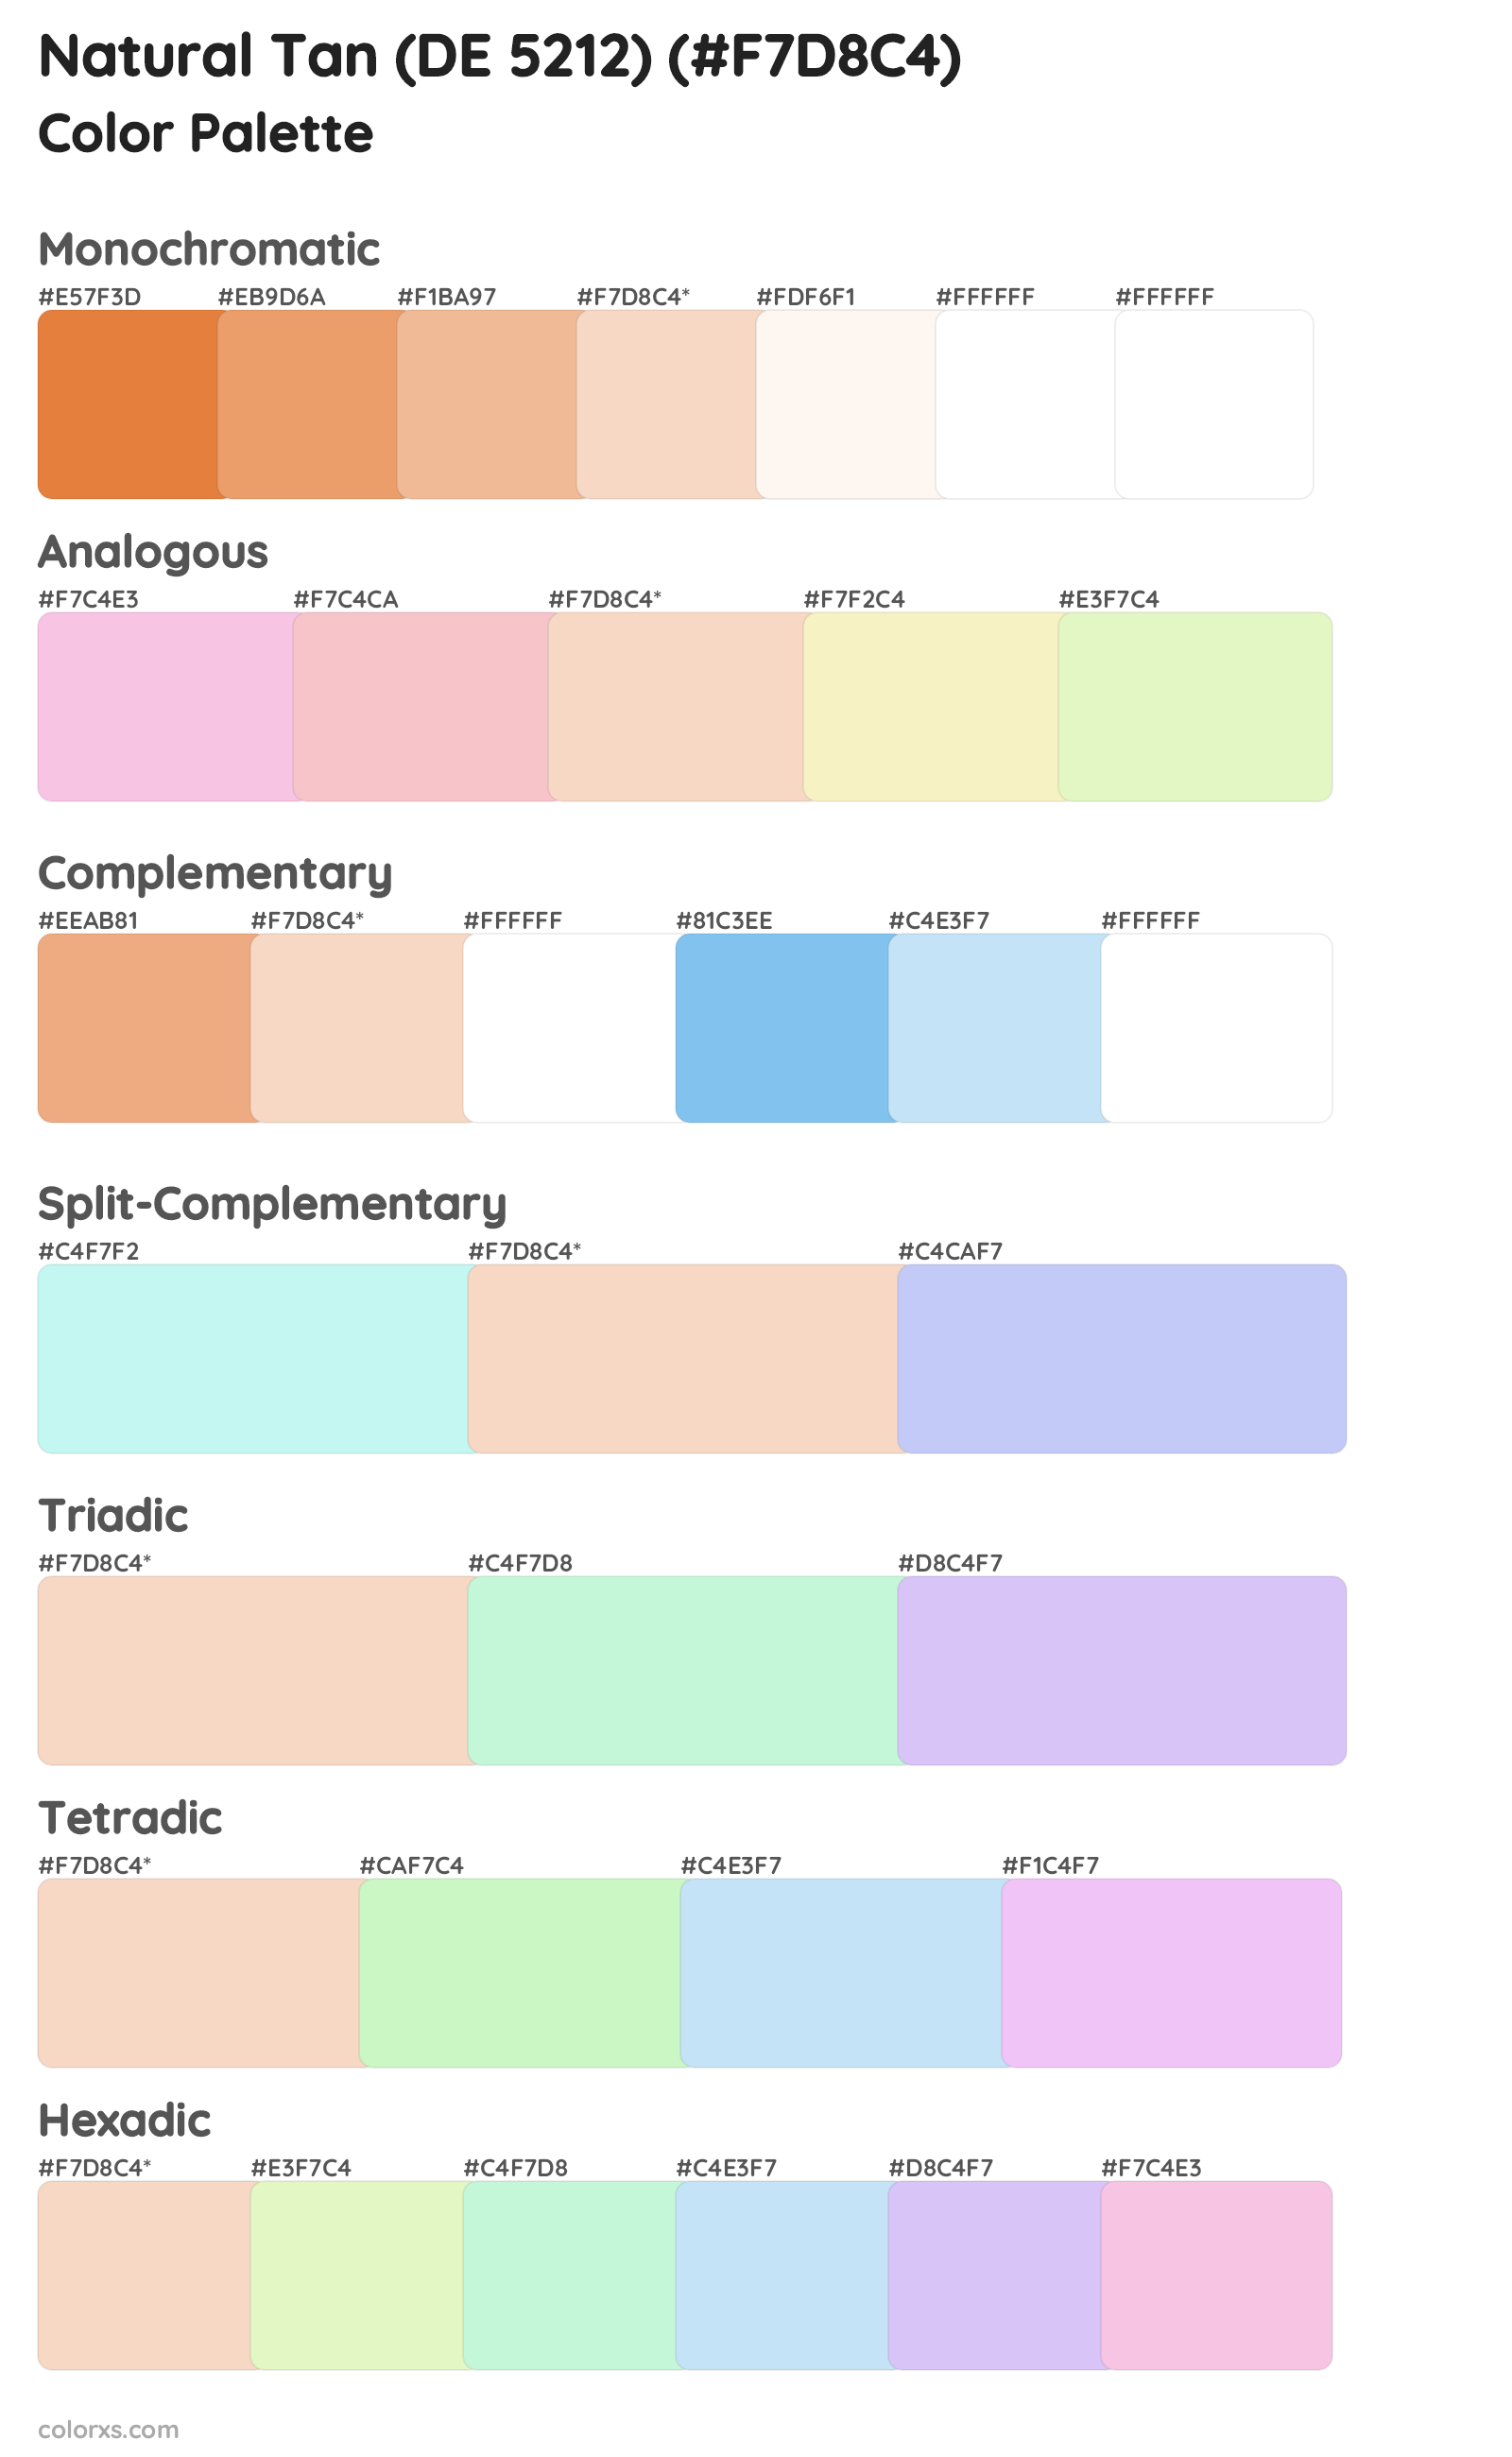 Natural Tan (DE 5212) Color Scheme Palettes